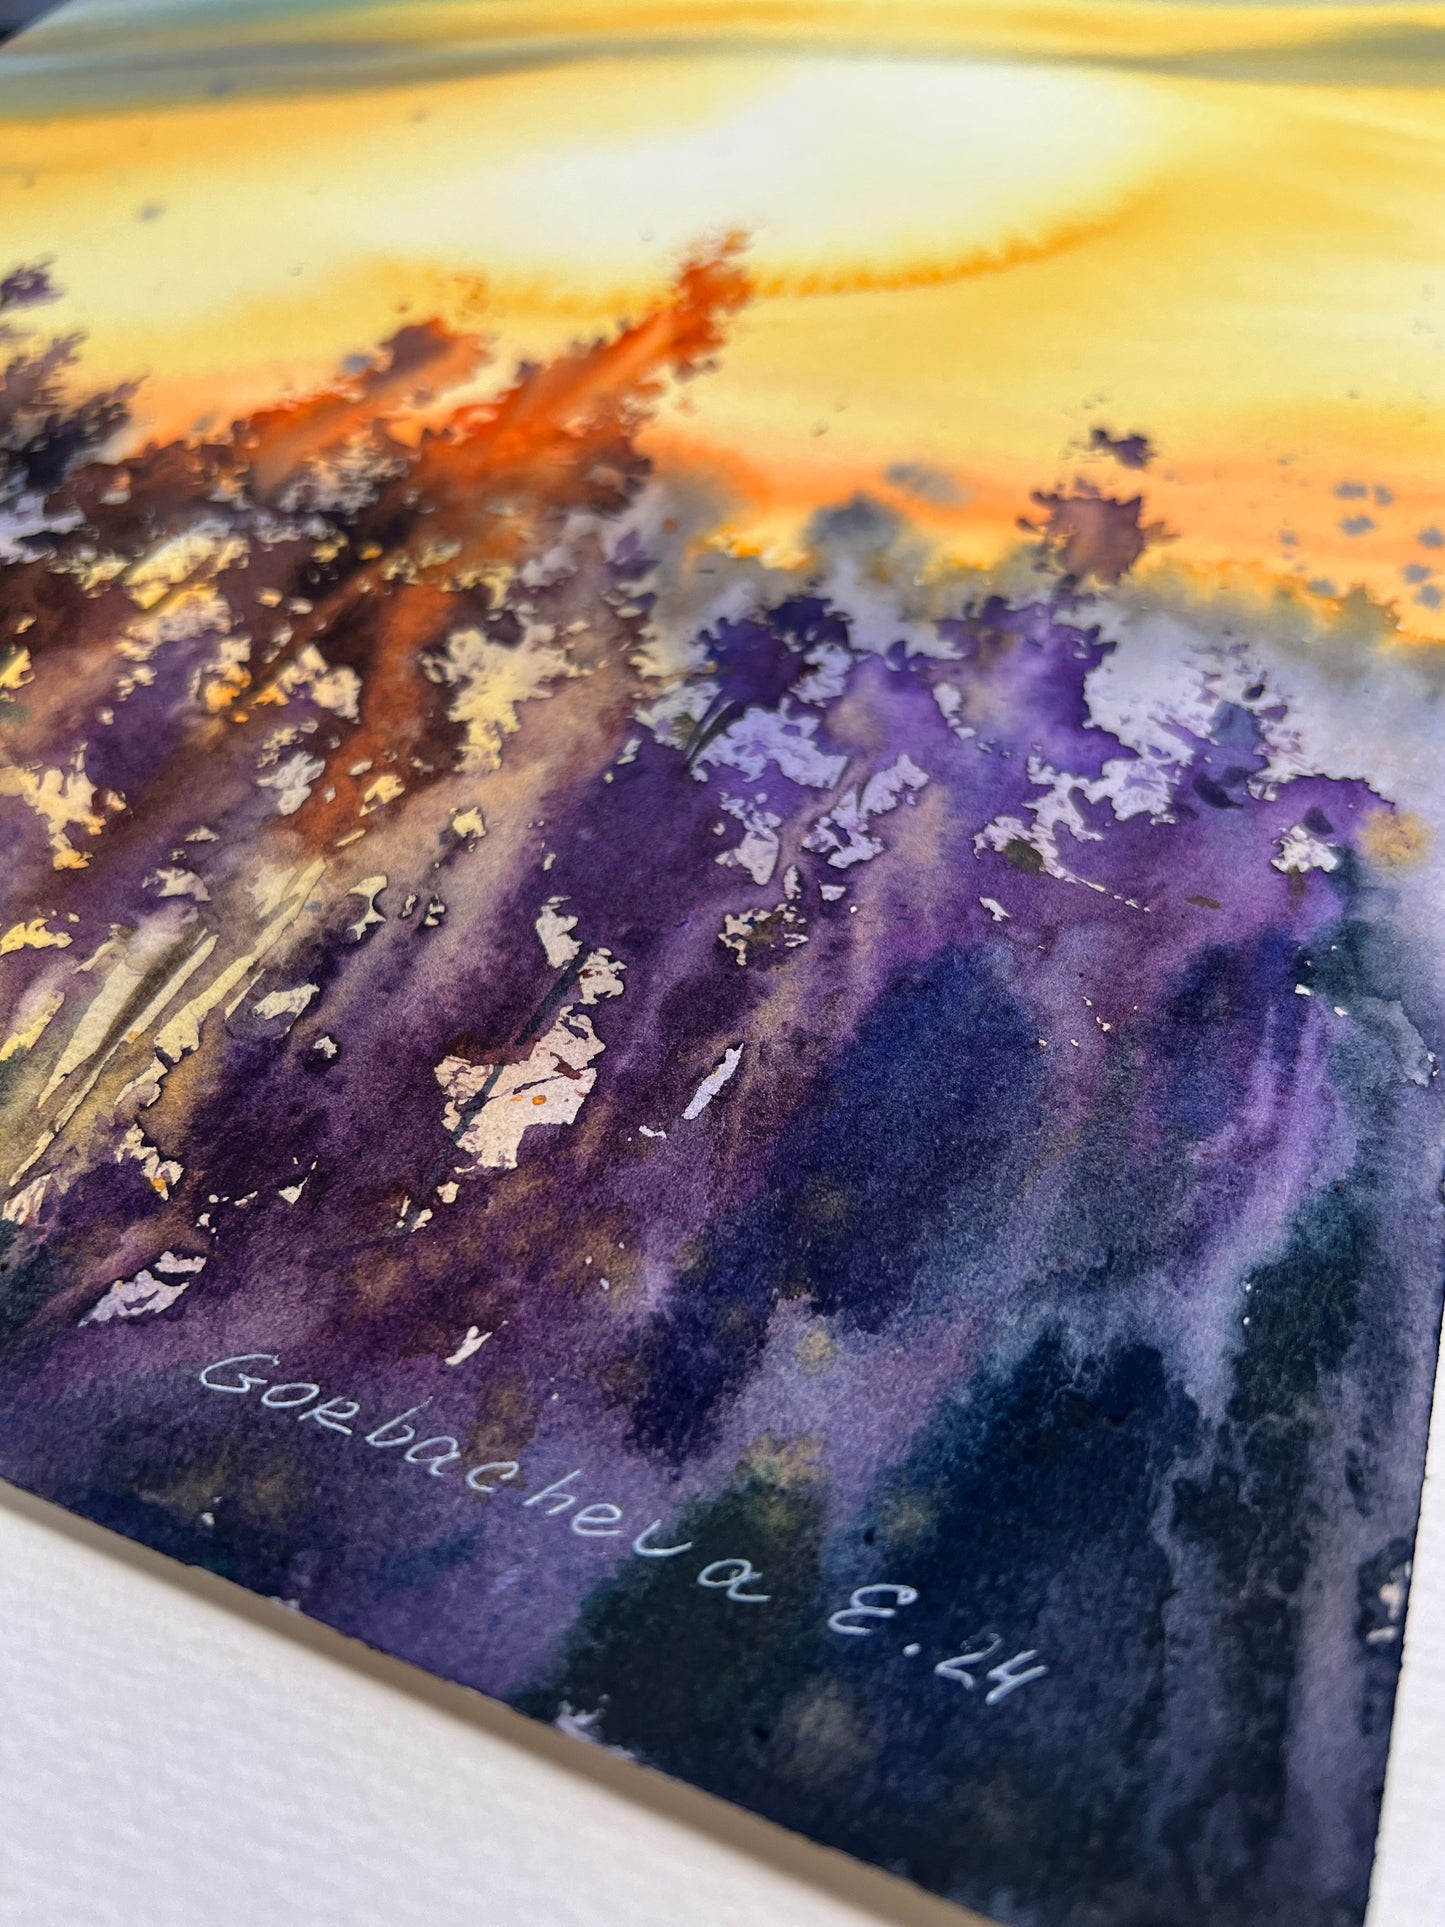 Nature Painting, Original Watercolor Artwork - Lavender sunset